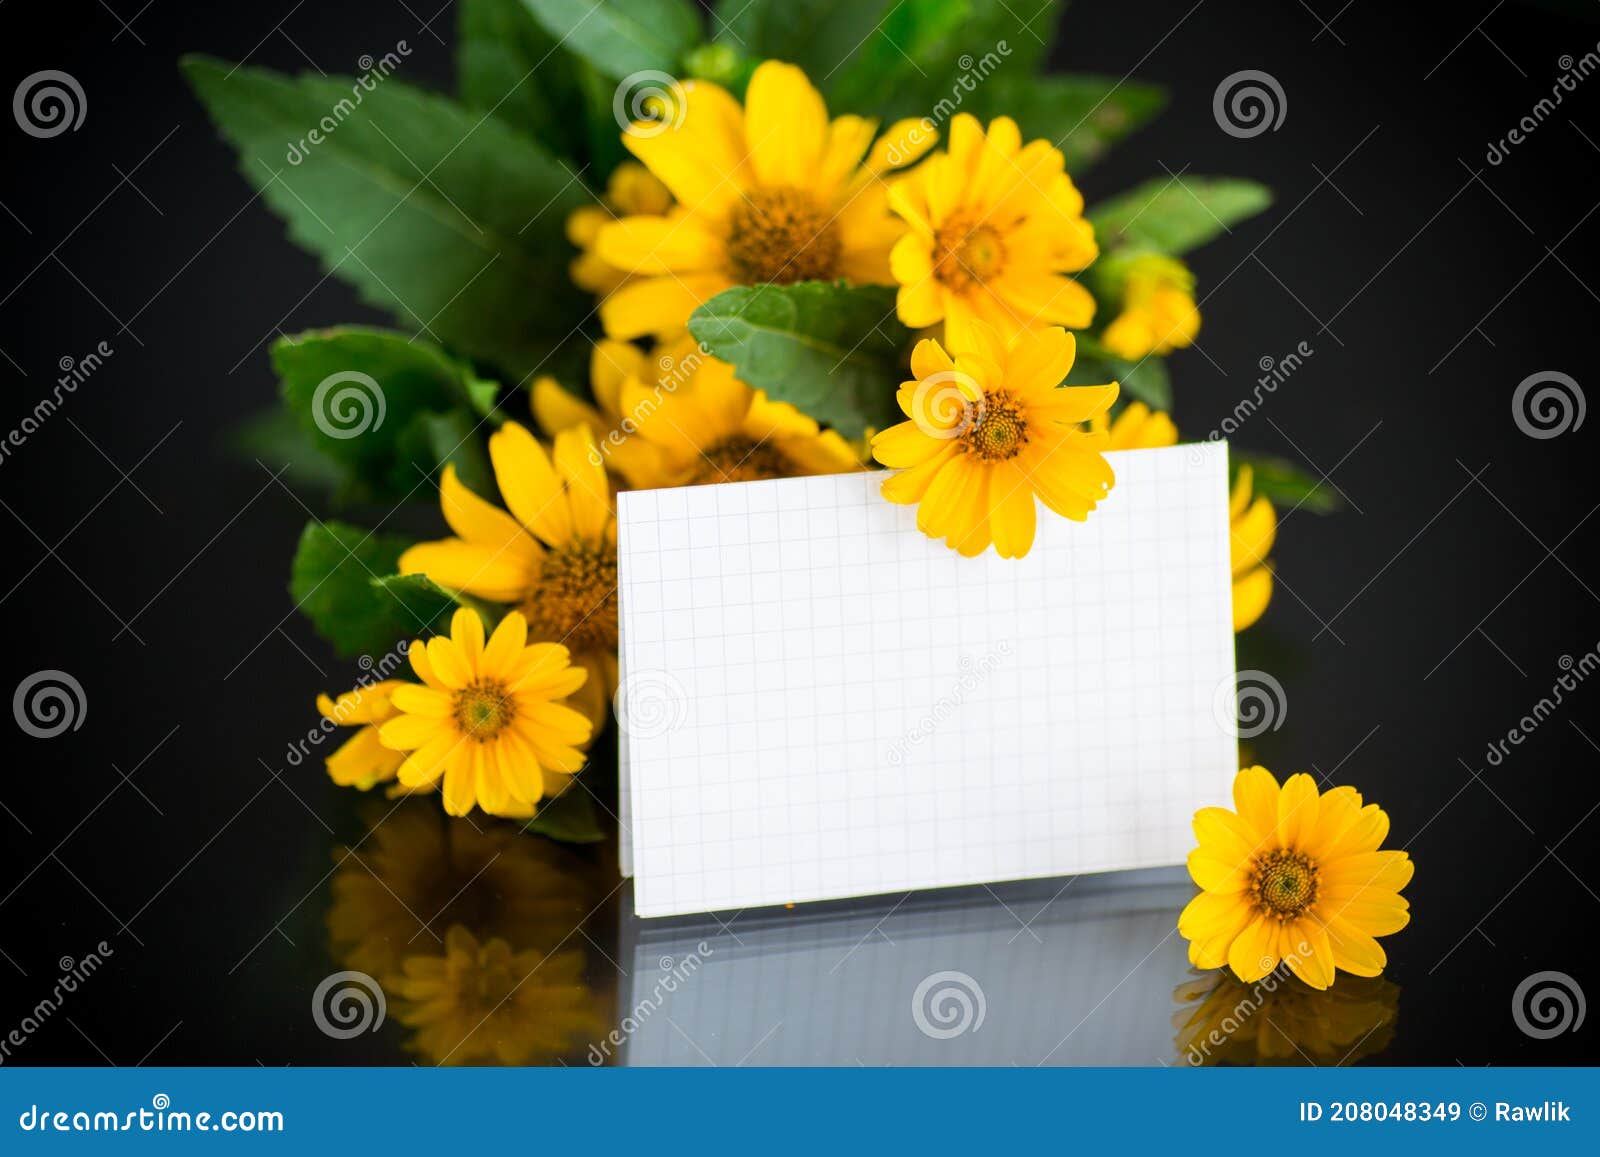 Buquê De Belas Margaridas Amarelas Sobre Fundo Negro Imagem de Stock -  Imagem de fundo, florescer: 208048349